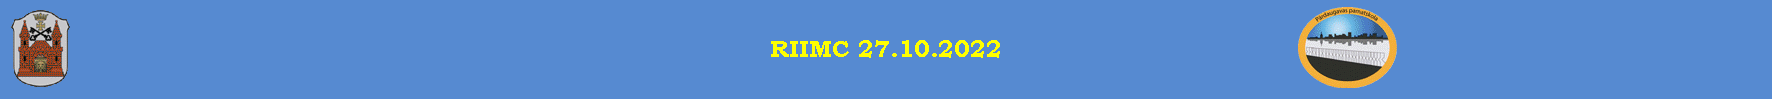 RIIMC 27.10.2022